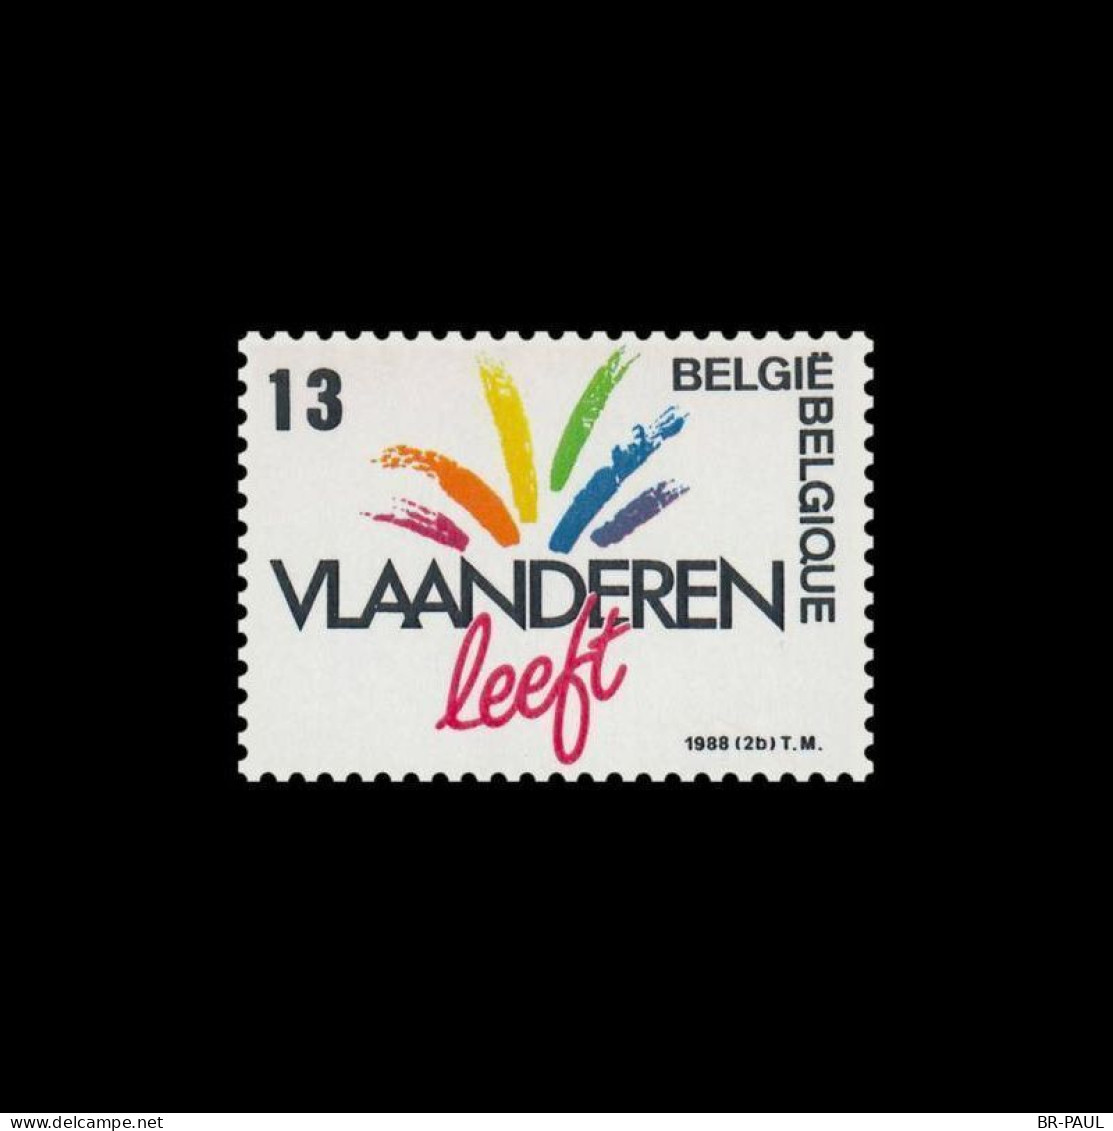 BELGIQUE - TIMBRE NEUF ANNEE 1988 / DYNAMIQUE DES REGIONS - Unused Stamps